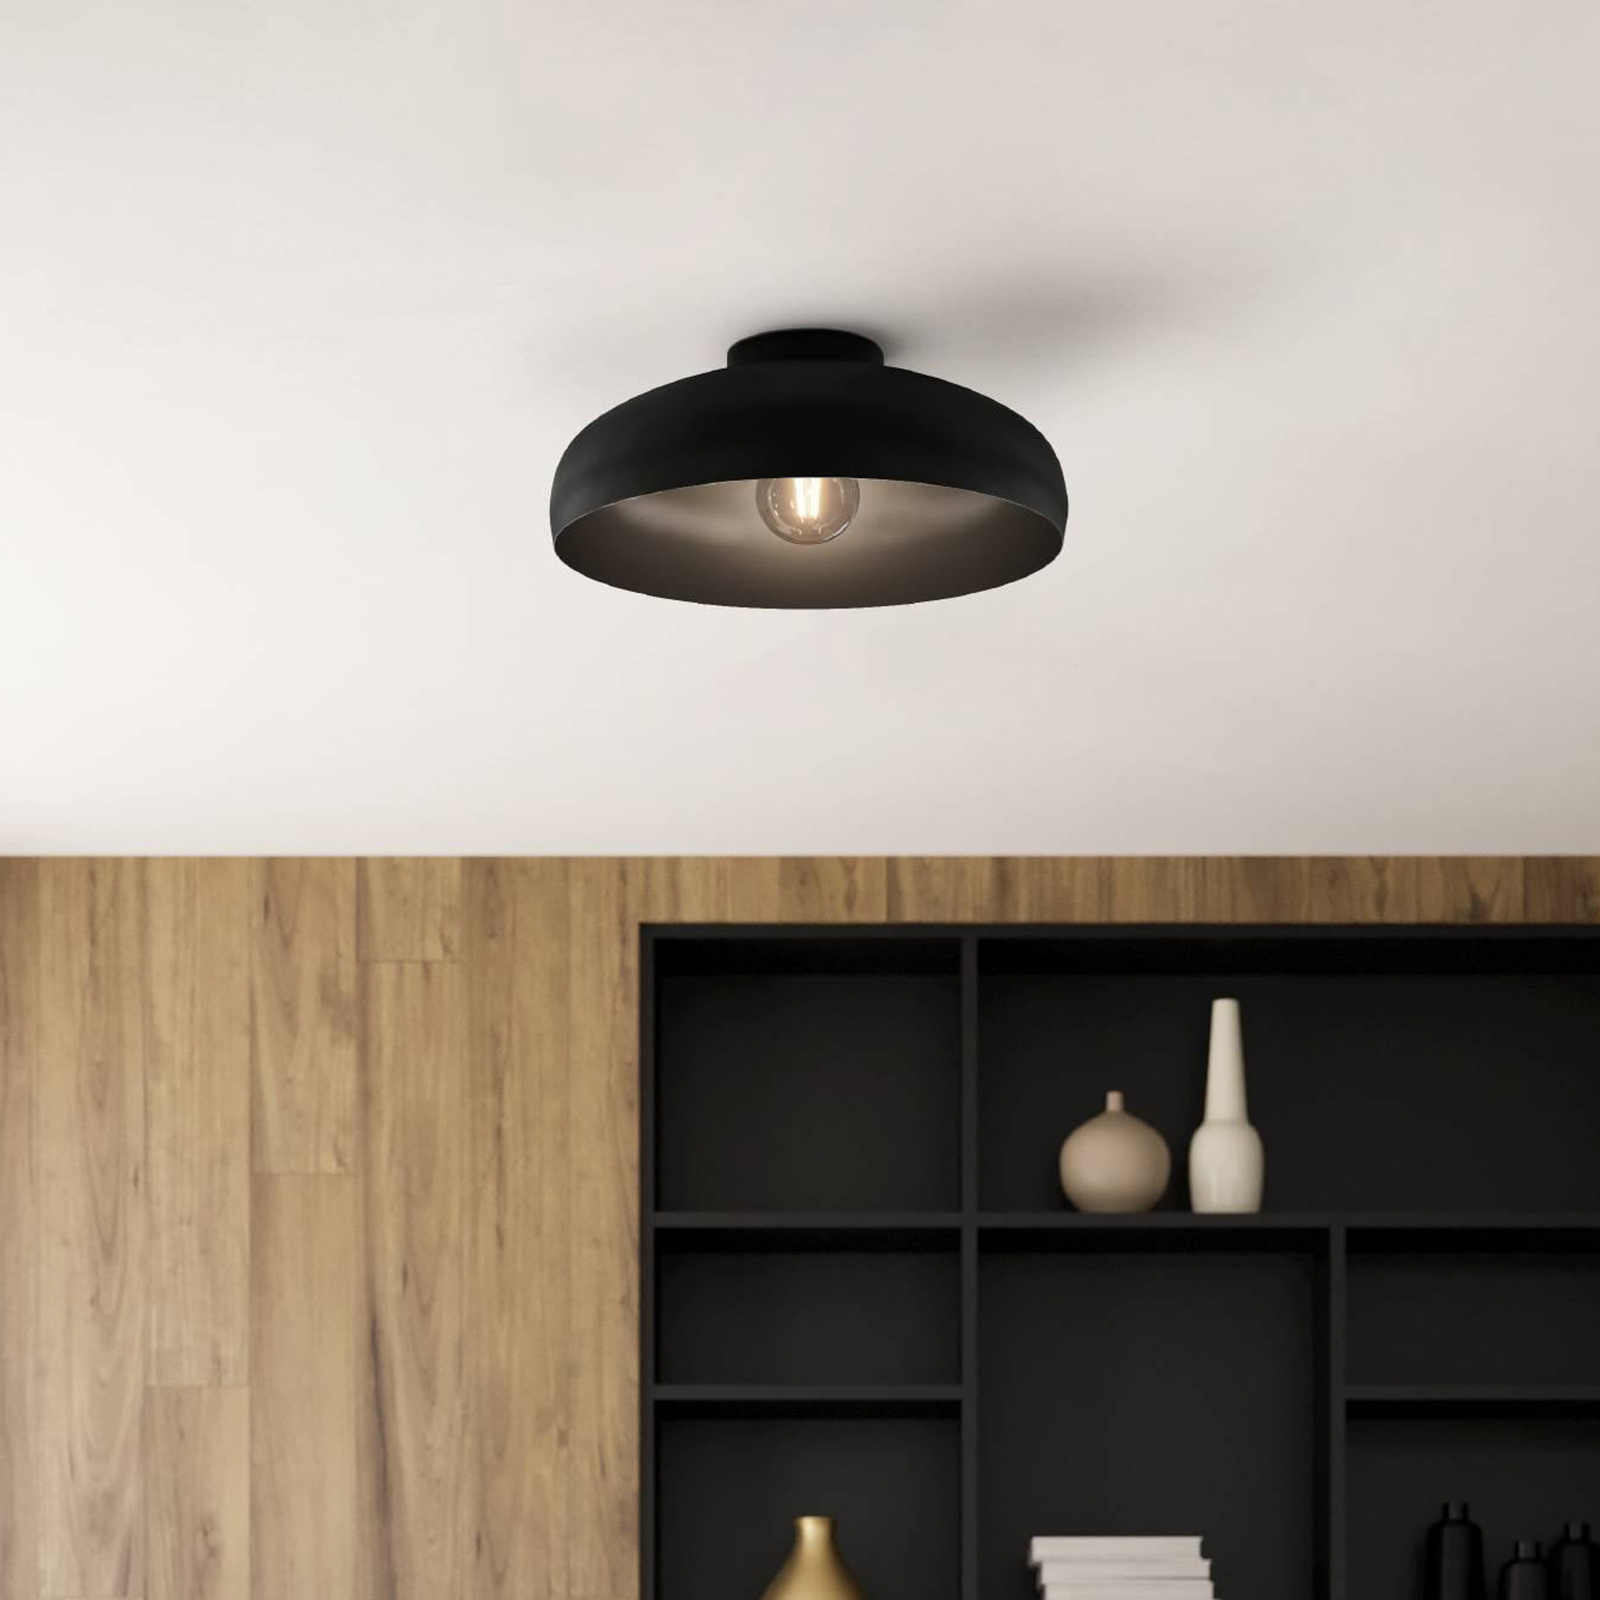 Mogano ceiling light, Ø 40 cm, black, steel